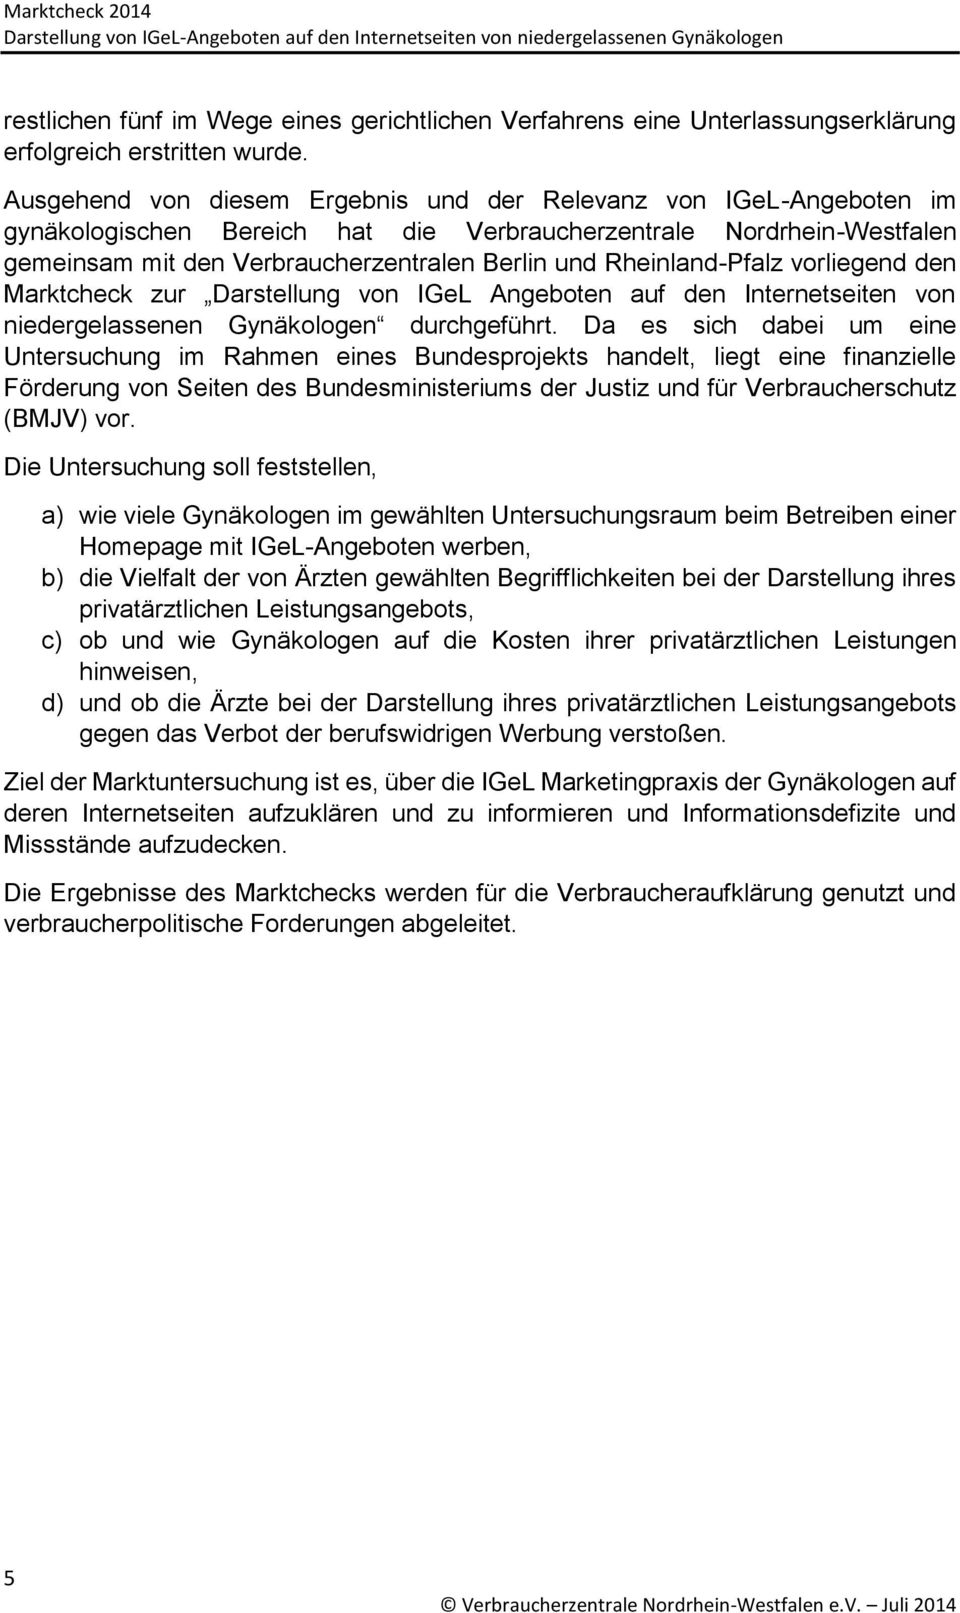 Rheinland-Pfalz vorliegend den Marktcheck zur Darstellung von IGeL Angeboten auf den Internetseiten von niedergelassenen Gynäkologen durchgeführt.